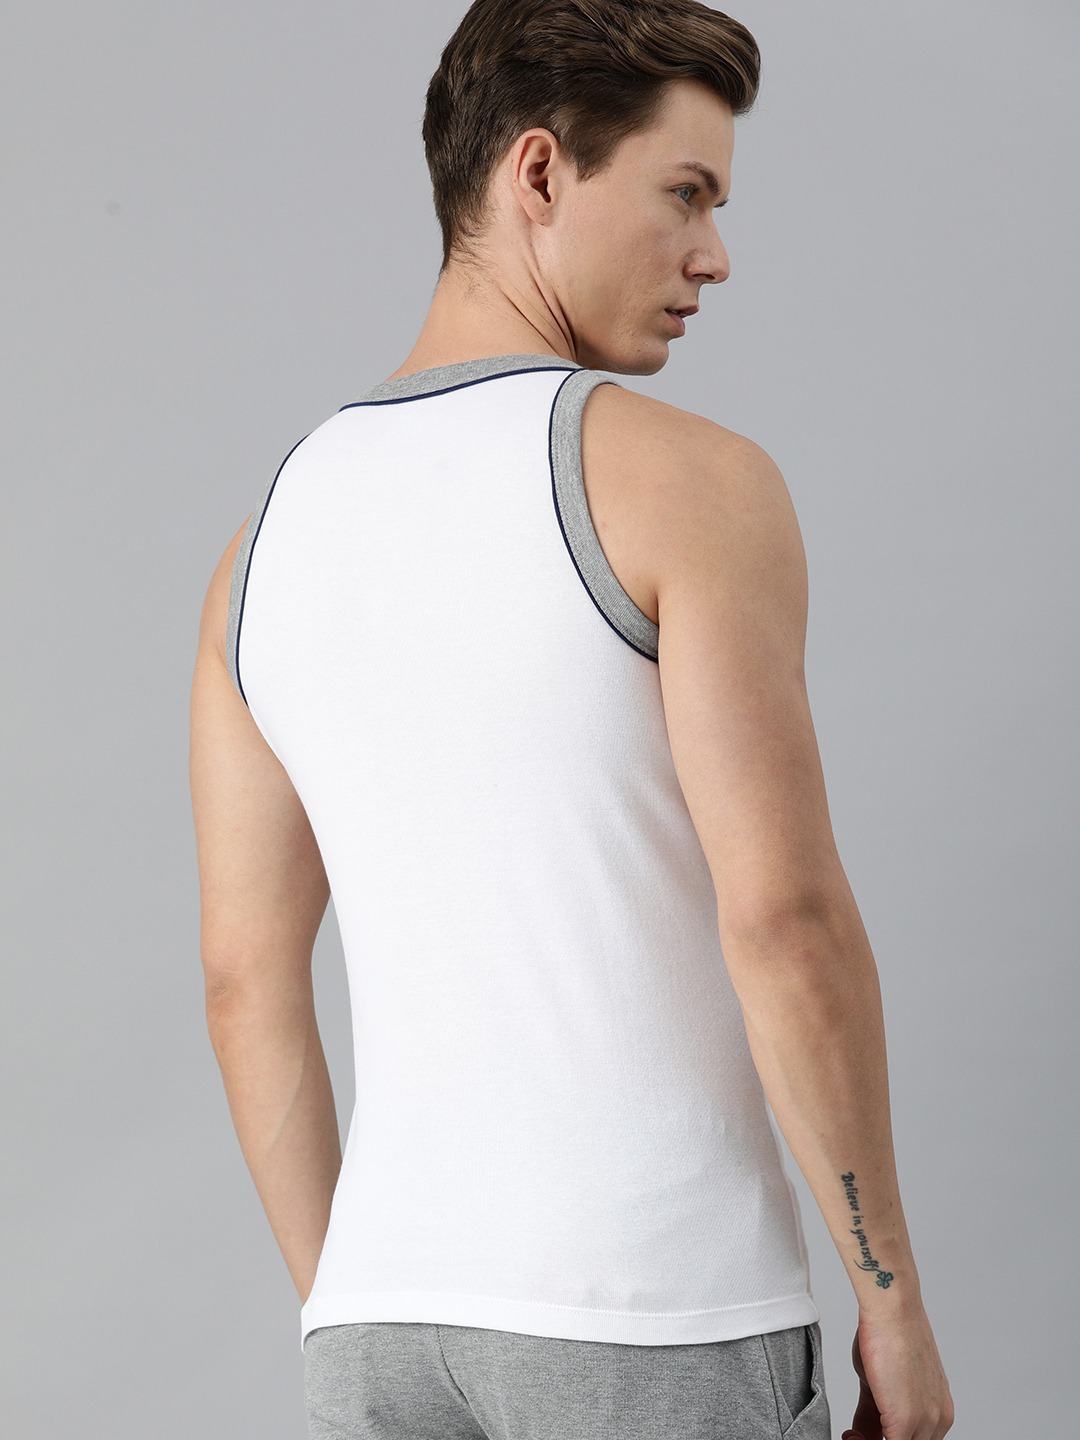 Clothing Innerwear Vests | Roadster Men Pack of 2 Solid Innerwear Vests - LK47881